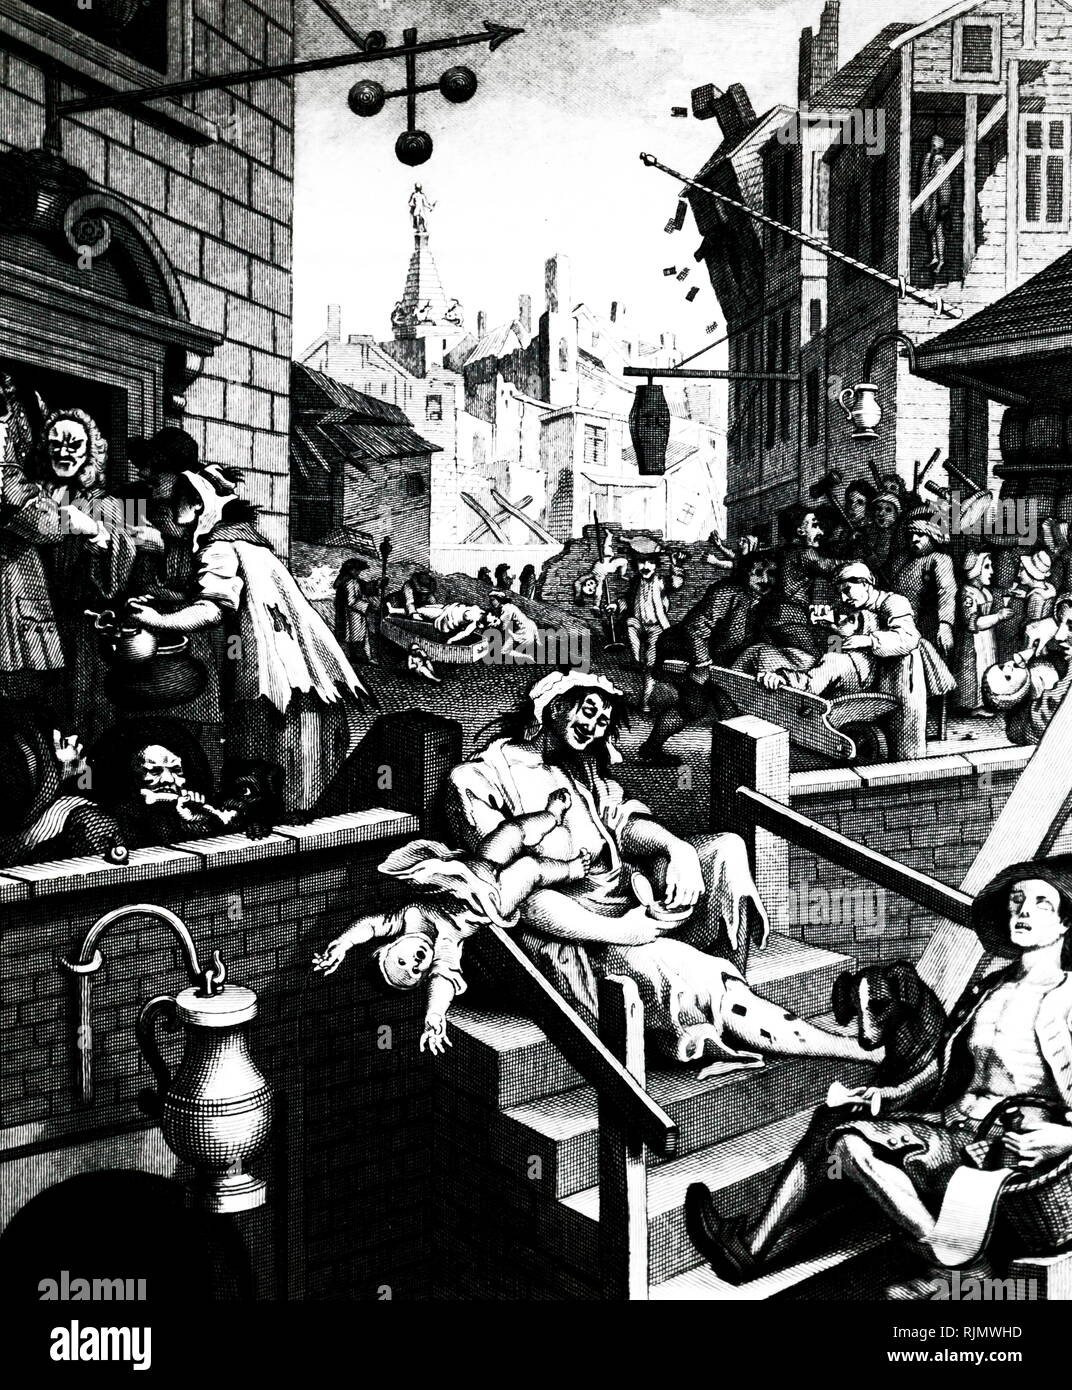 Inciso un incisione "Gin Lane' da William Hogarth (1697-1764), che mostra i mali della sfrenata di bere alcolici. Bere allegerito le miserie della povertà, ma è peggiorata piuttosto che migliorata la miseria. Foto Stock